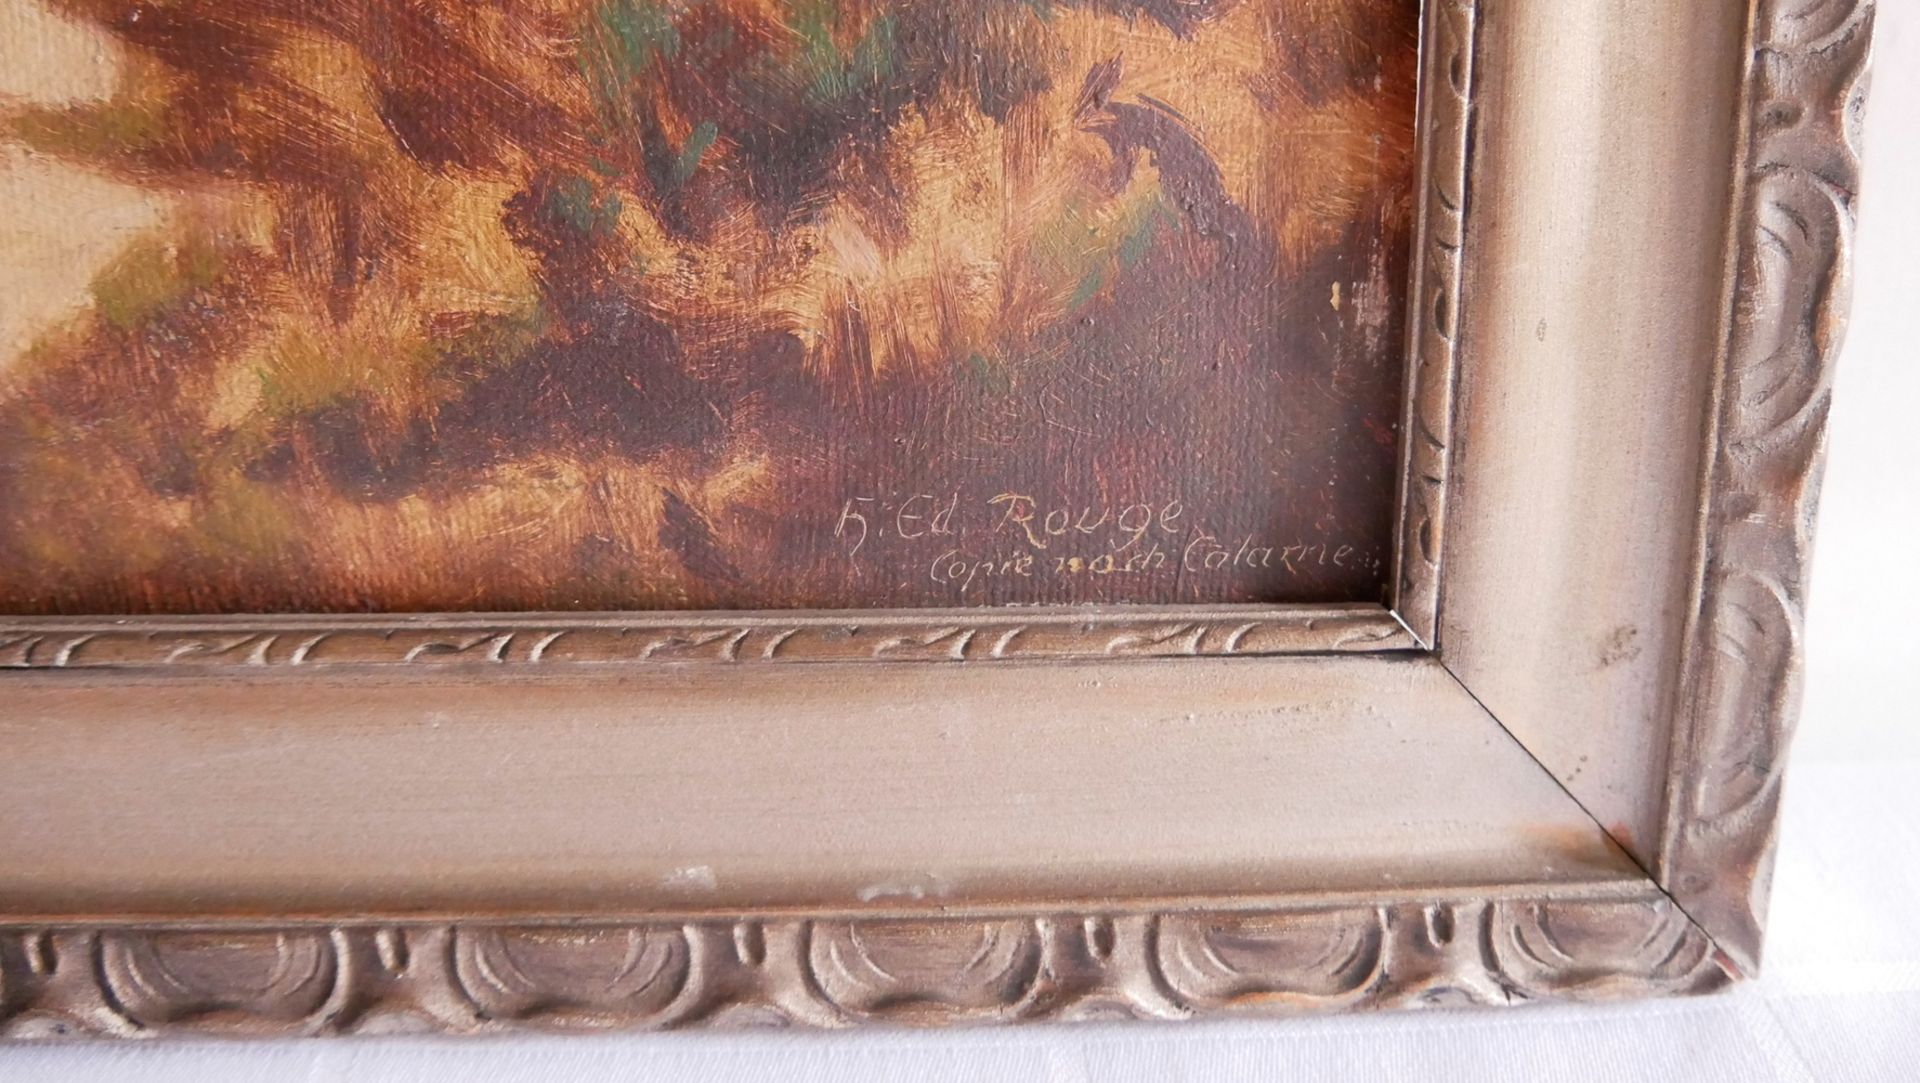 Ölgemälde auf Platte, rechts unten h. Ed. Rouge Copie nach Calameo, im ausgefallenen gold Rahmen ( - Image 2 of 2